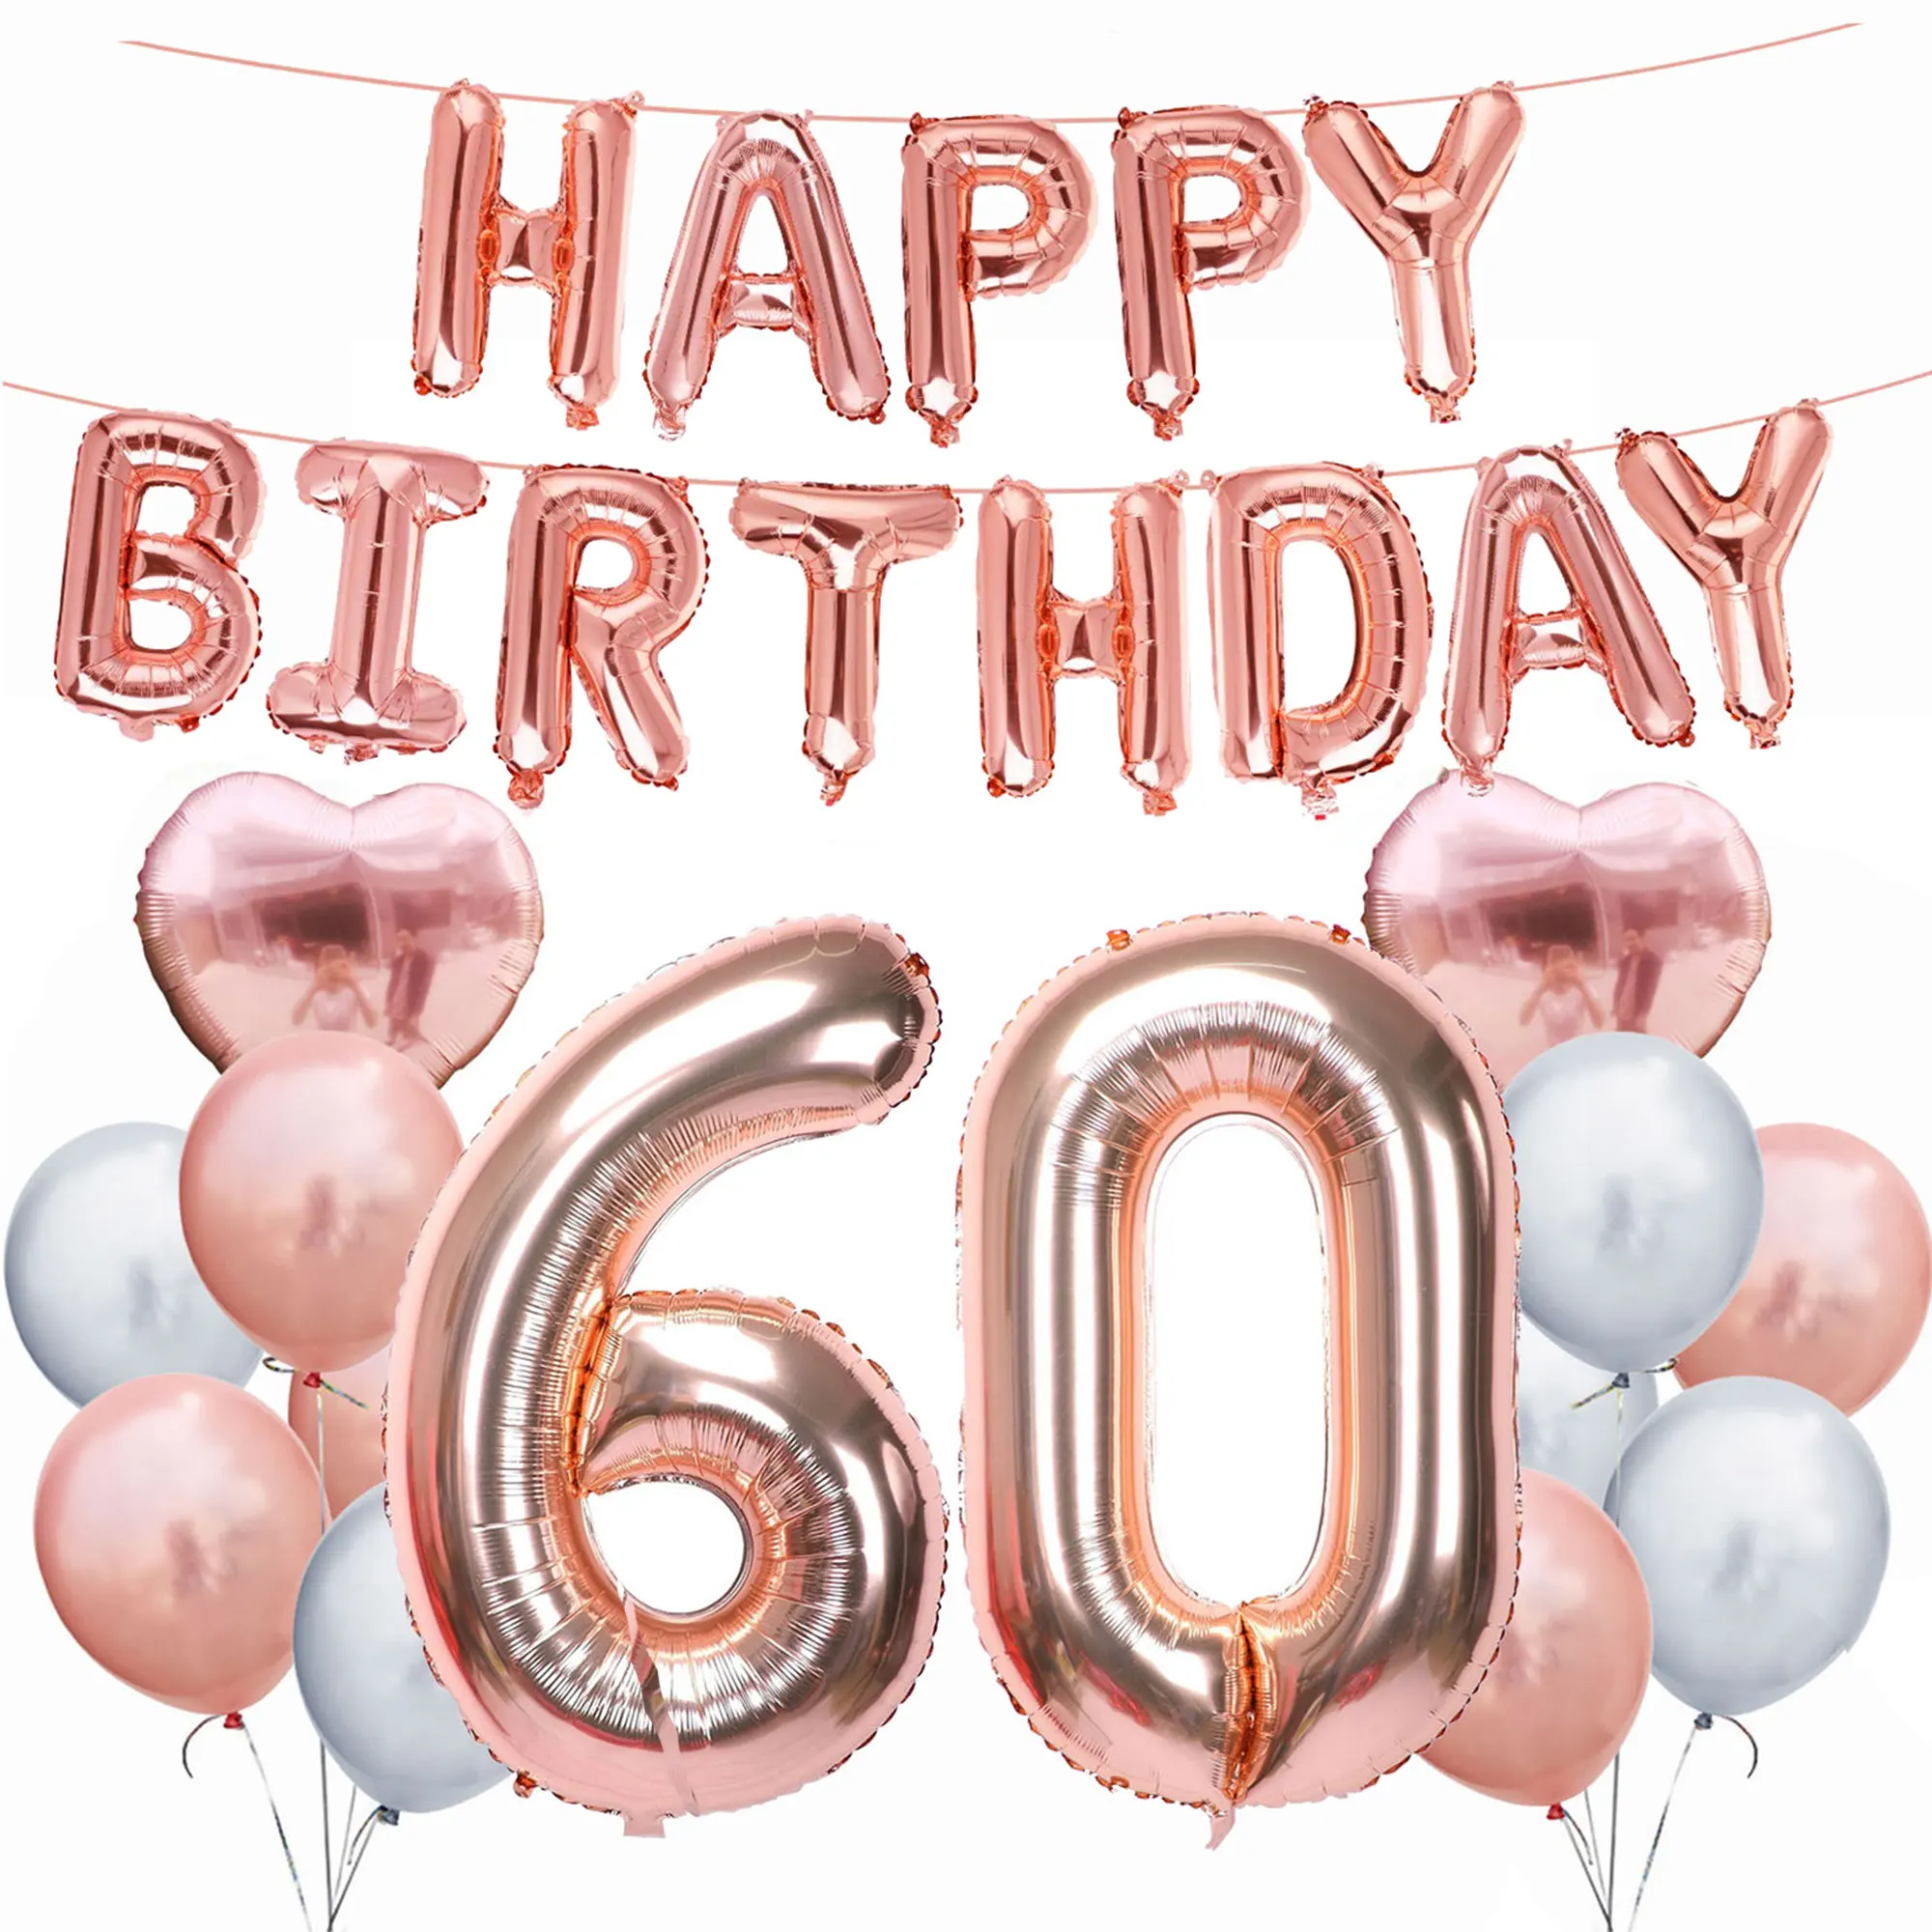 ZLJQ 30, 40, 50, 60, 70, 80 лет, товары для дня рождения, для вечеринок, розовое золото, с днем рождения, фольгированный шар, для взрослых, для дня рождения, украшения, балон